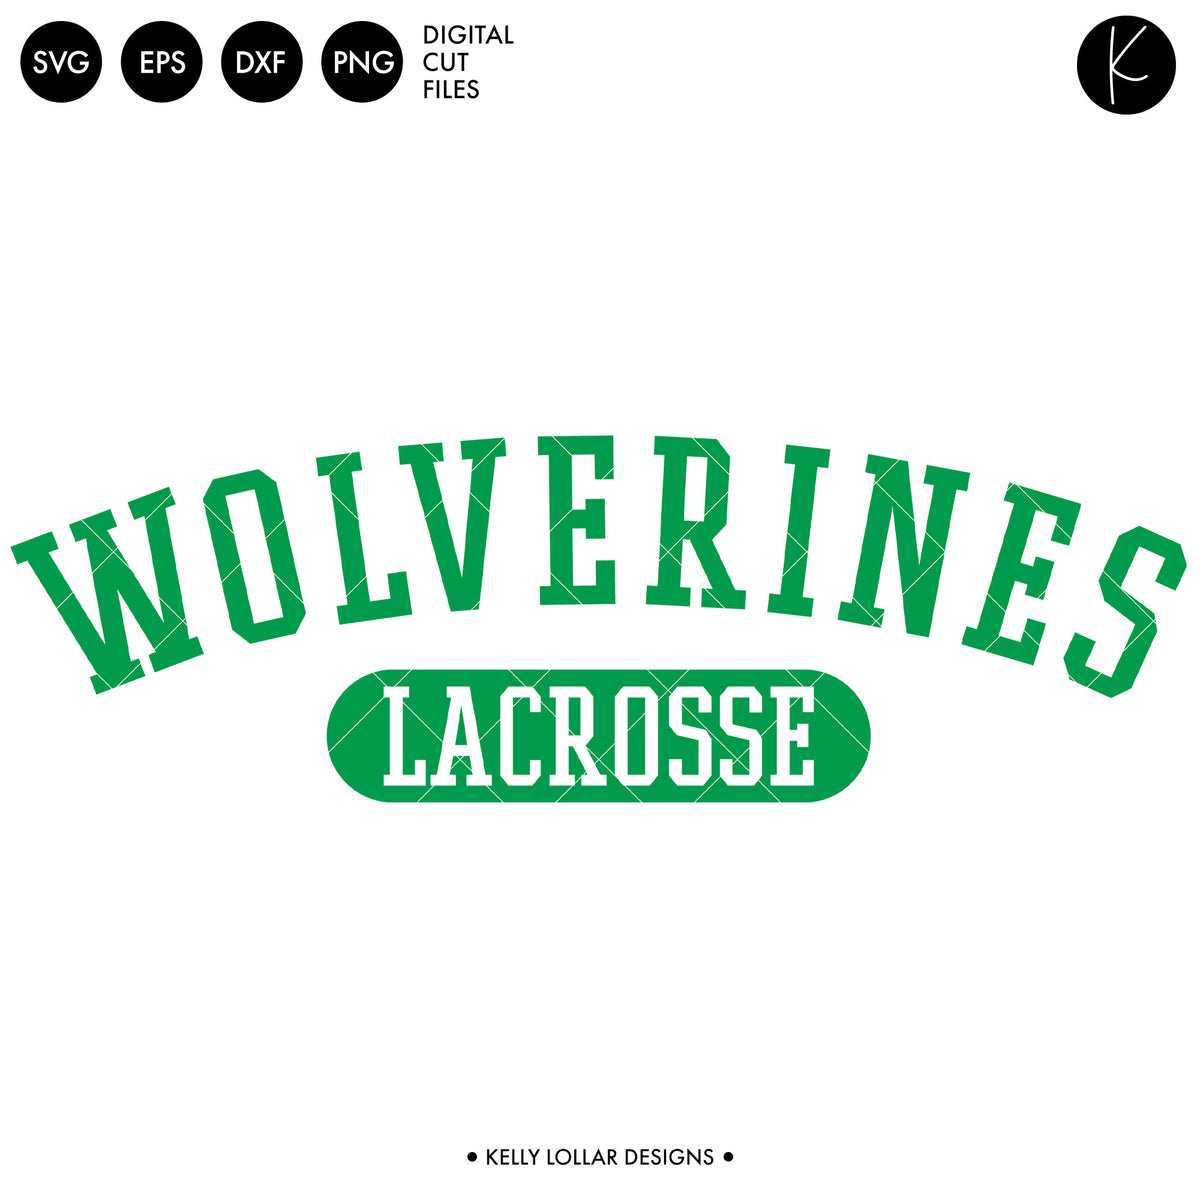 Wolverines Lacrosse Bundle | SVG DXF EPS PNG Cut Files